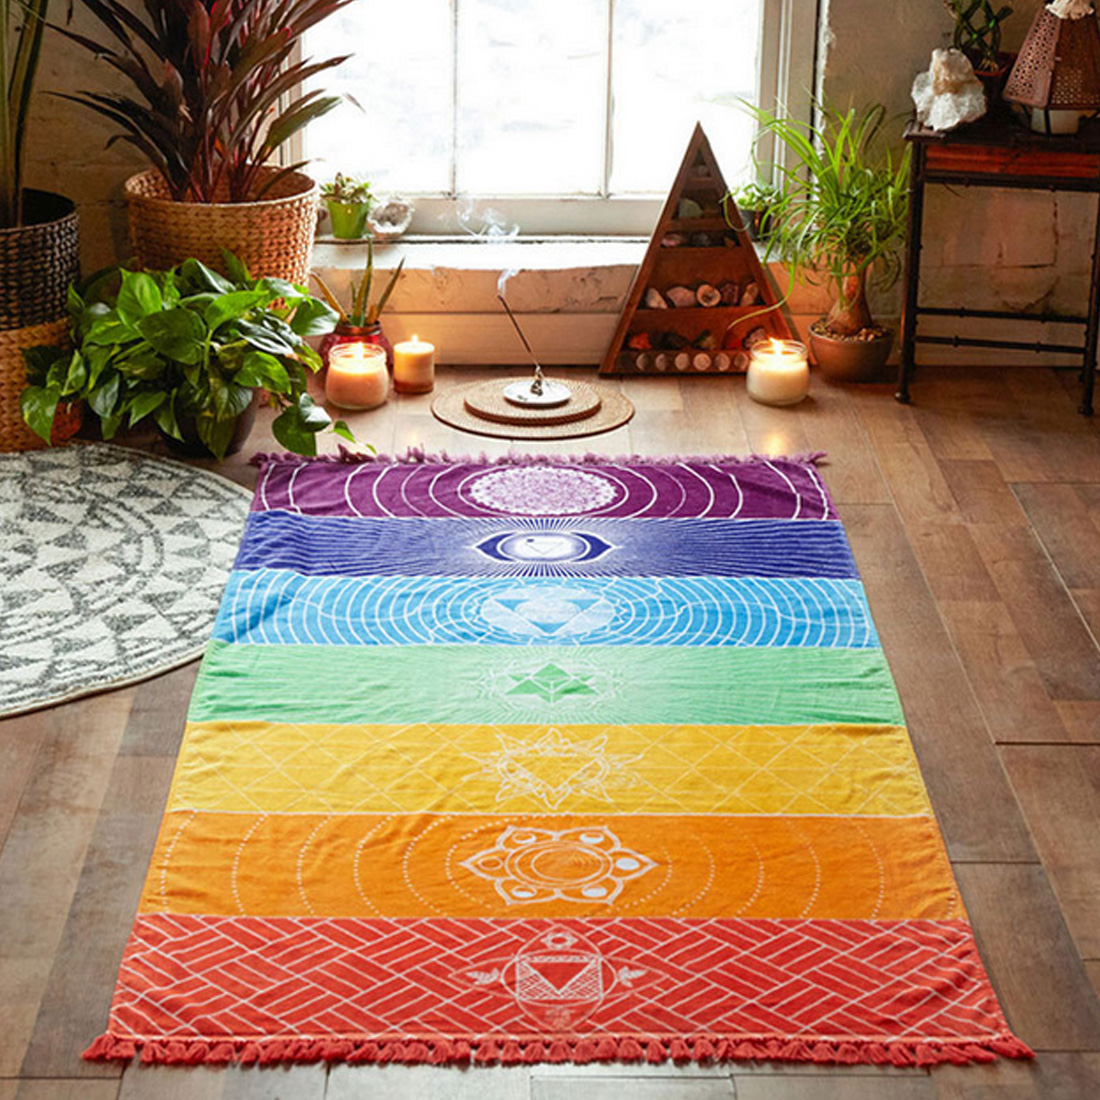 Polyester Bohemen Muur Opknoping India Mandala Deken 7 Chakra Gekleurde Tapestry Regenboog Strepen Reizen Strand Yoga Mat